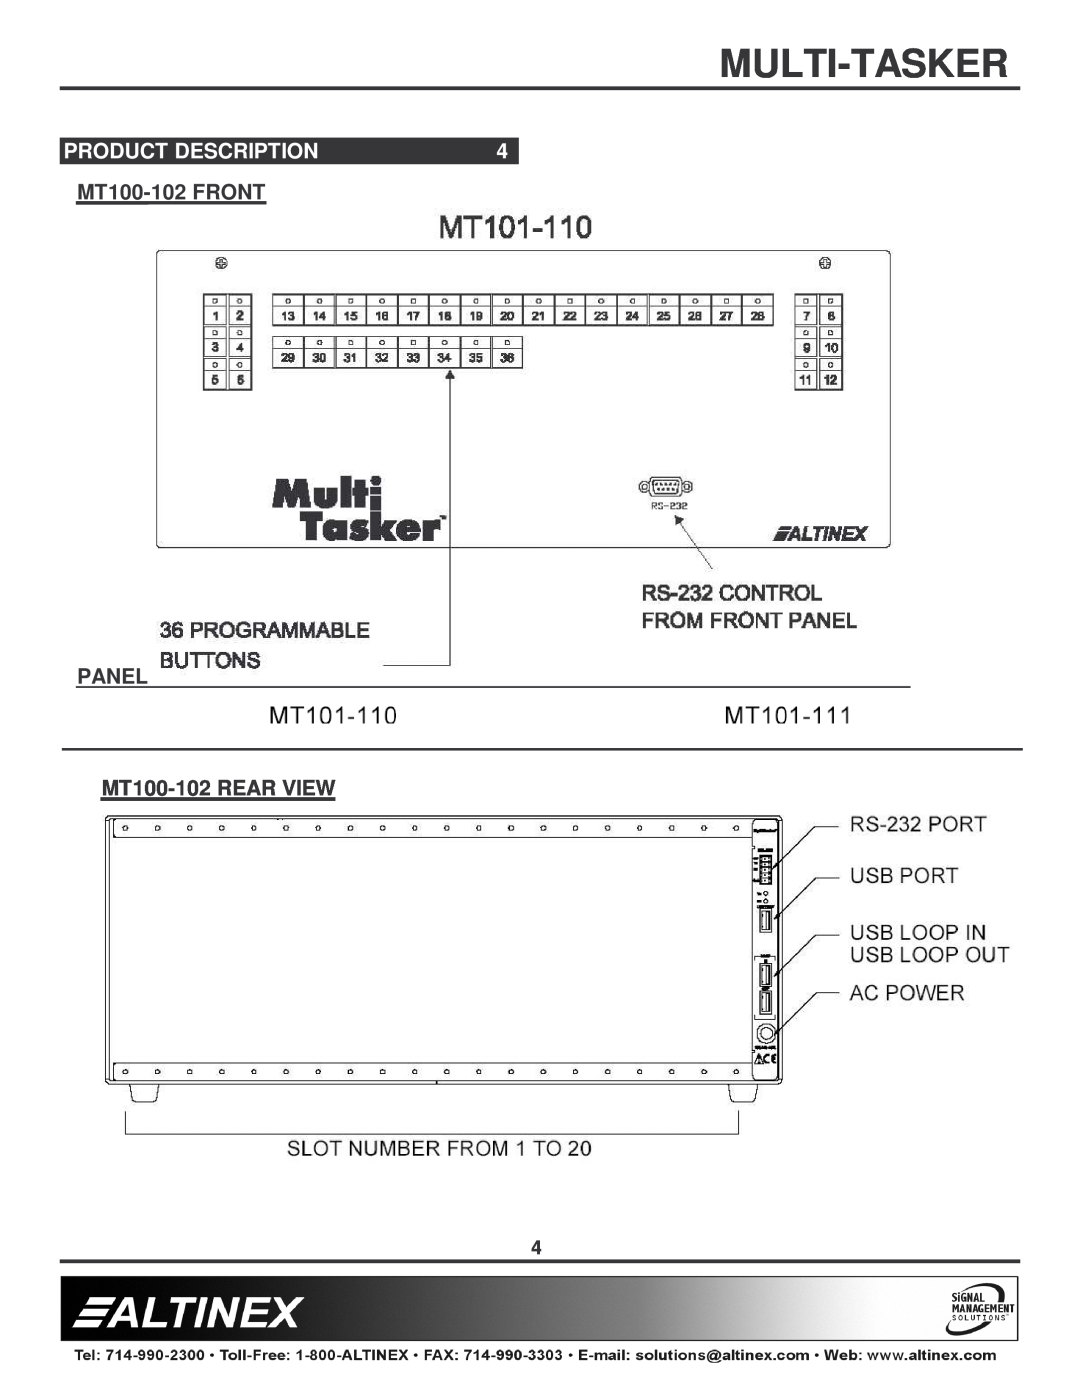 Altinex manual Product Description, Multi-Tasker, MT100-102 FRONT PANEL MT100-102 REAR VIEW 